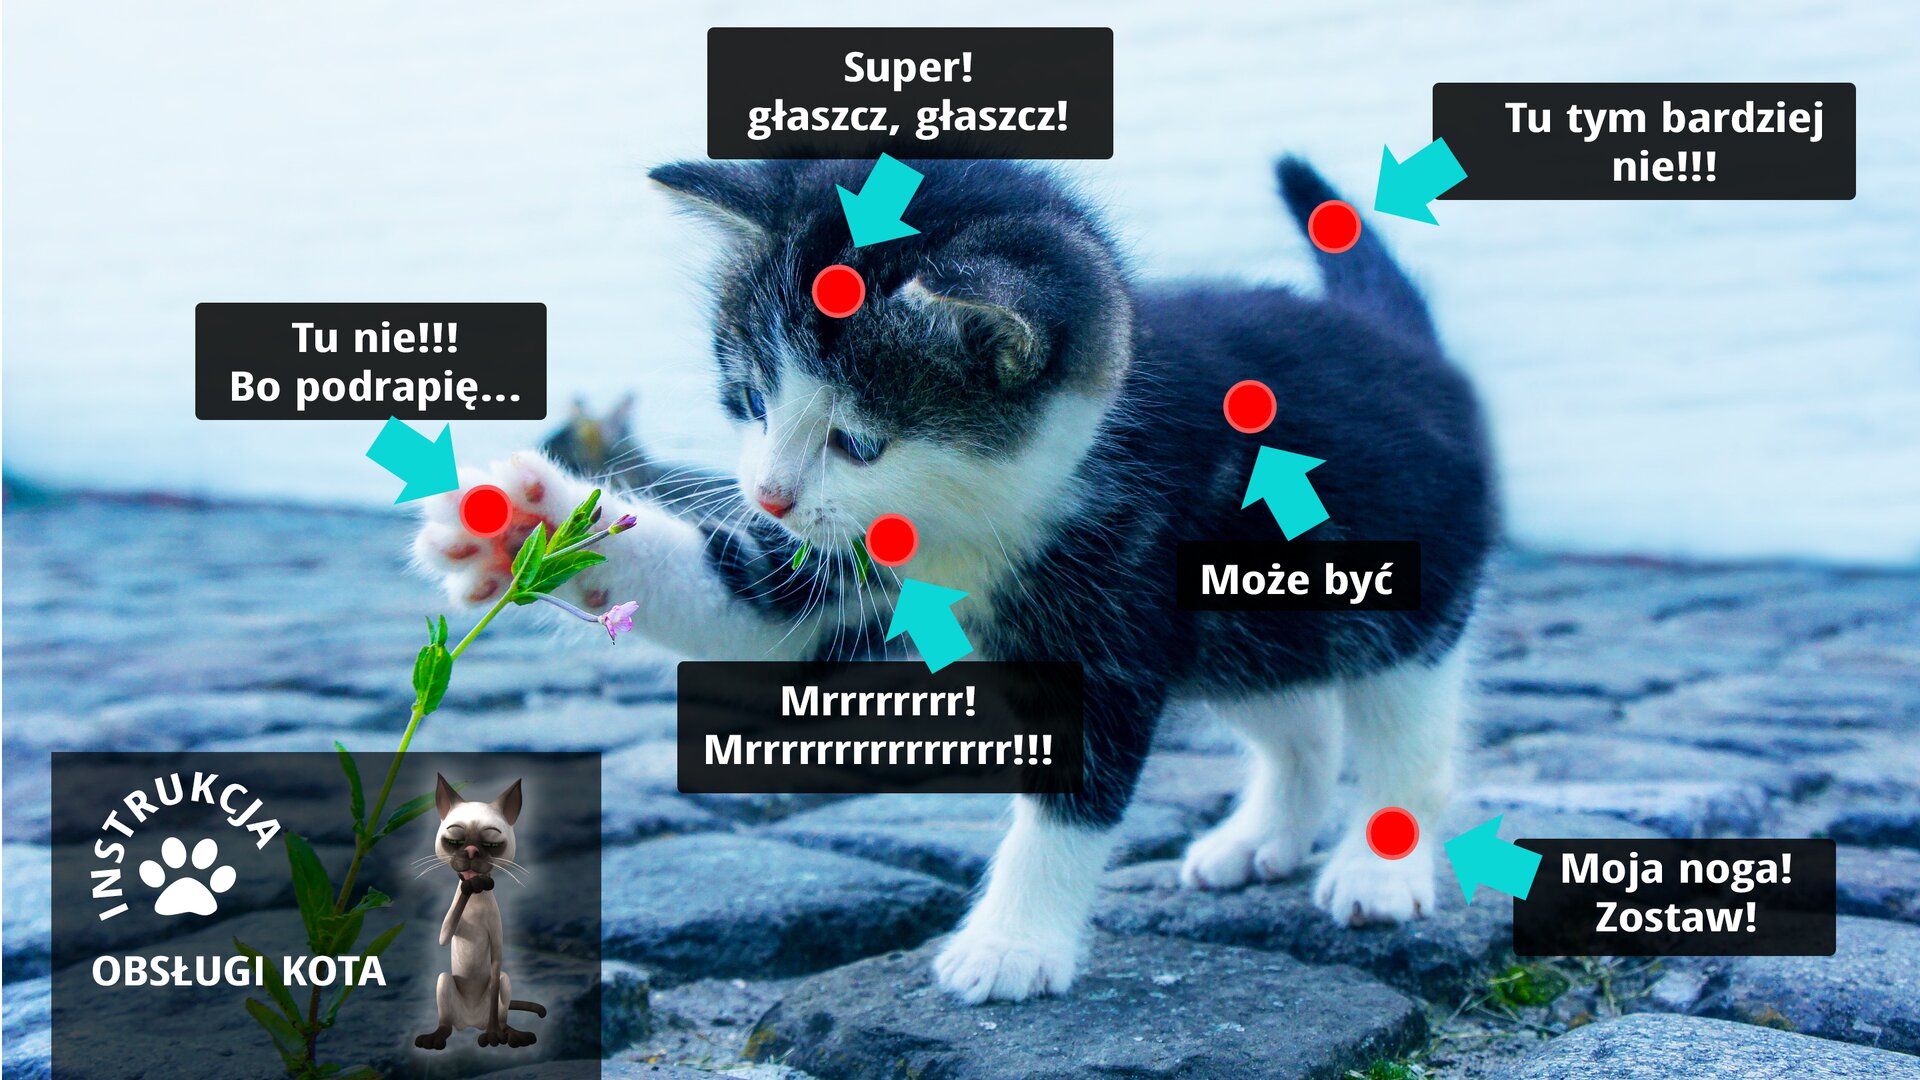 Grafika ma charakter humorystyczny, ponieważ przedstawia instrukcję obsługi kota. Ilustracja przedstawia czarnego małego kota. Kot stoi na kostce brukowej i prawą łapą potrąca różowy kwiatek na zielonej łodydze. Dookoła kota widnieją strzałki w kolorze jasnoniebieskim zakończone okrągłymi czerwonymi kropkami. Przy każdej strzałce znajduje się czarny prostokąt z komunikatem. Kolejno od lewej strony komunikat w pierwszym czarnym prostokącie ze strzałką skierowaną na wnętrze łapy kota brzmi „Tu nie! Bo drapię…”. Kolejny komunikat w czarnym prostokącie ze strzałką skierowaną na głowę kota brzmi „Super! głaszcz, głaszcz!”. Kolejny komunikat w czarnym prostokącie ze strzałką skierowaną na ogon kota brzmi „Tu tym bardziej nie!!!”. Następny komunikat w czarnym prostokącie ze strzałką skierowaną na bok kota „Może być”. Kolejny komunikat w czarnym prostokącie ze strzałką skierowaną na łapę kota „Moja noga! Zostaw!”. Ostatni komunikat w czarnym prostokącie ze strzałką skierowaną na wąsy kota „Mrrr! Mrrr!”. W dolnym lewym rogu na szarym tle znajduje się prostokąt z białym napisem „INSTRUKCJA OBSŁUGI KOTA”.